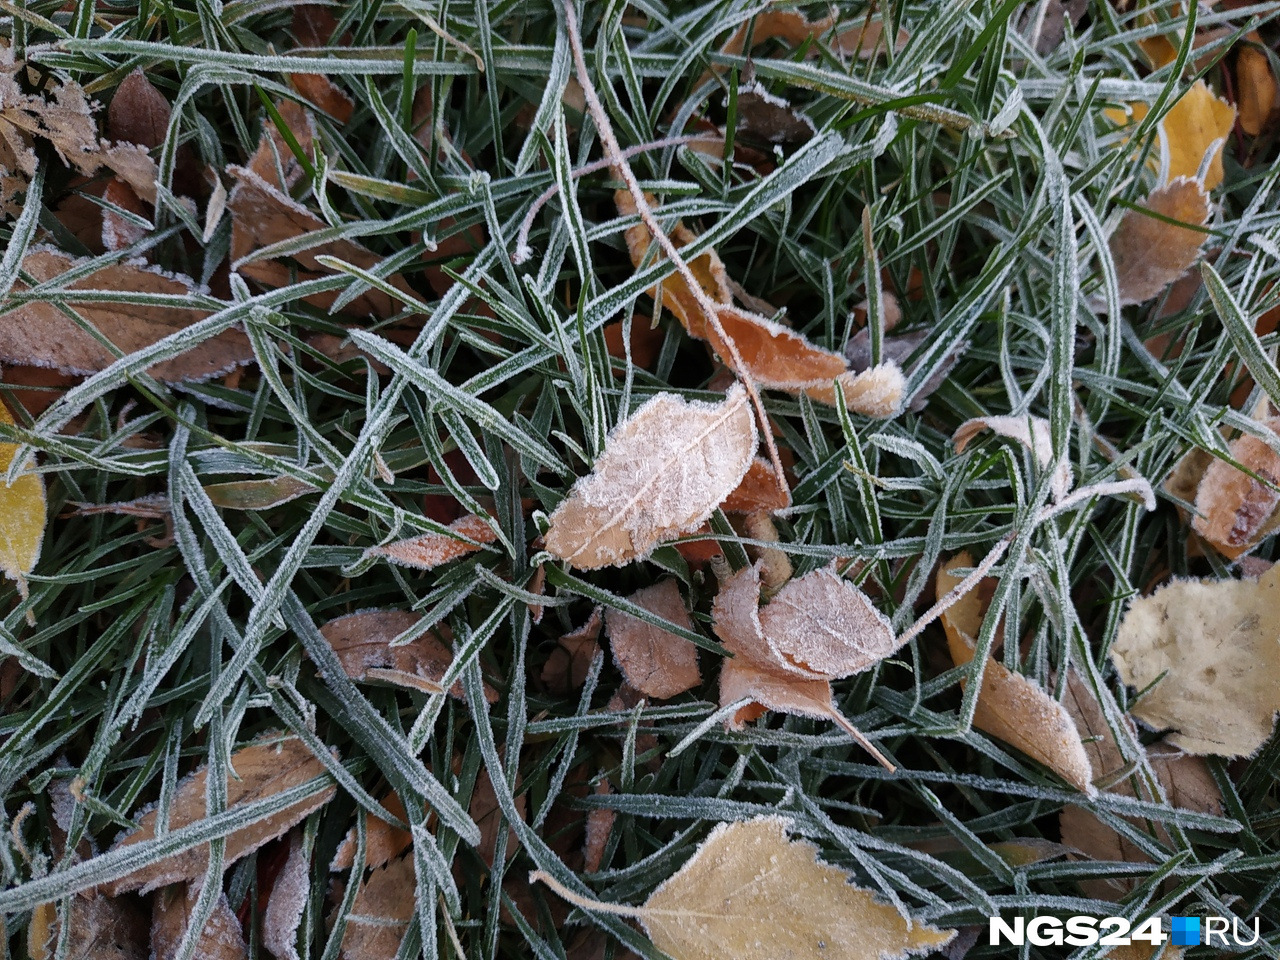 Впервые этой осенью красноярцы могли наблюдать иней на траве